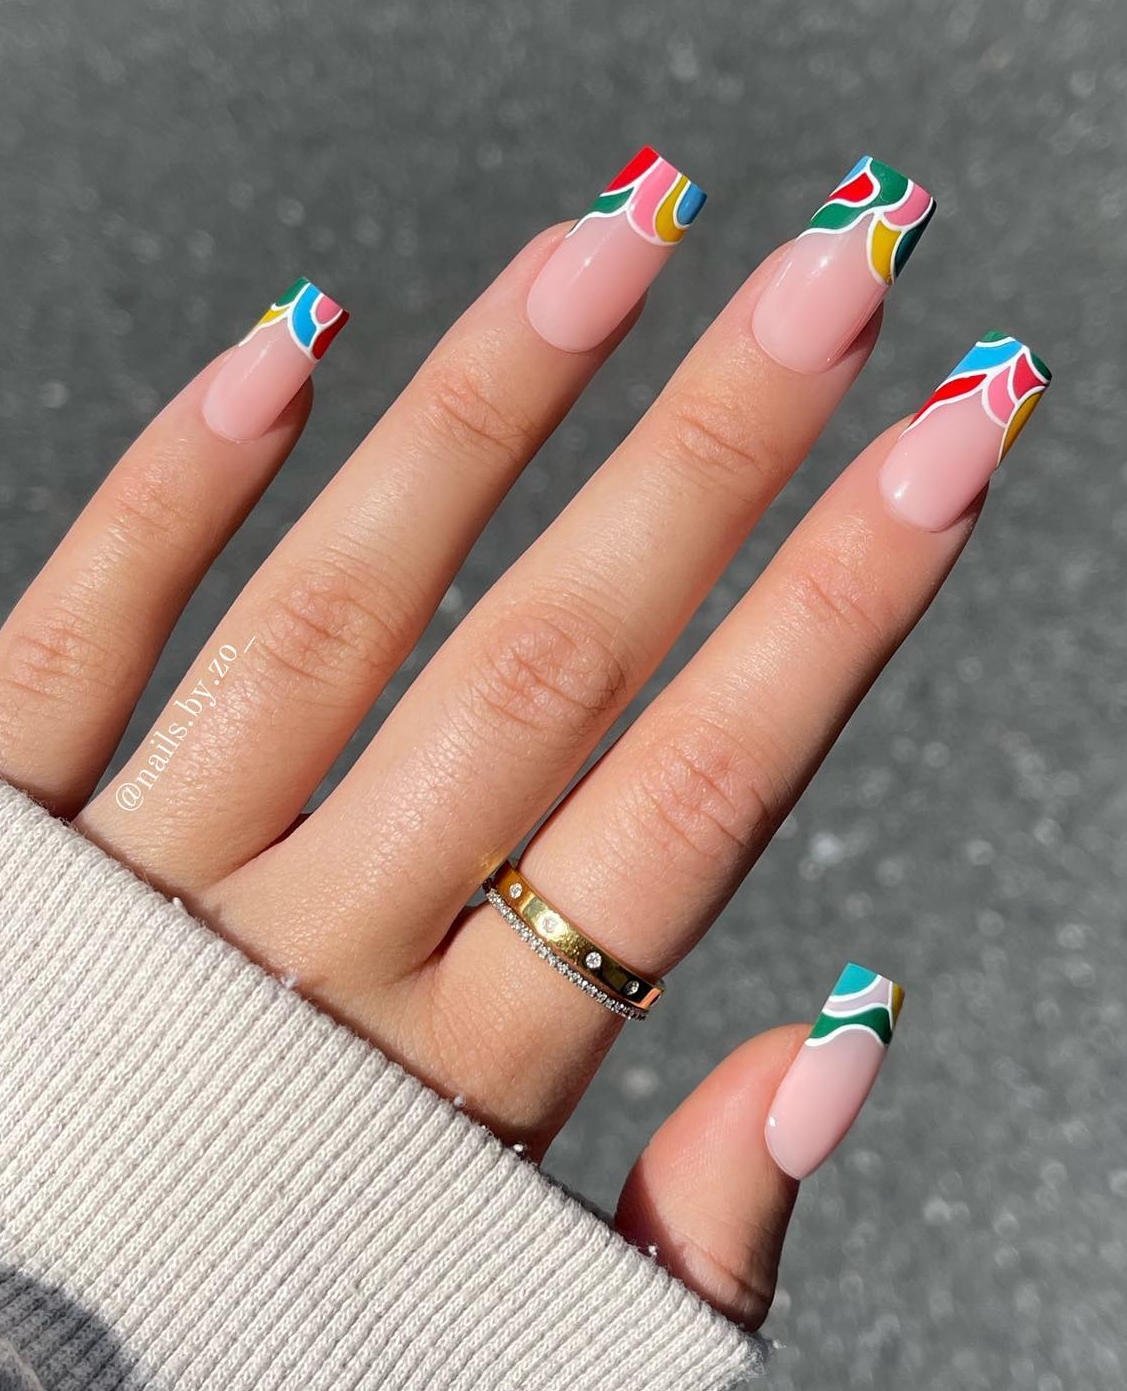 Vierkante nagels met kleurrijke tips